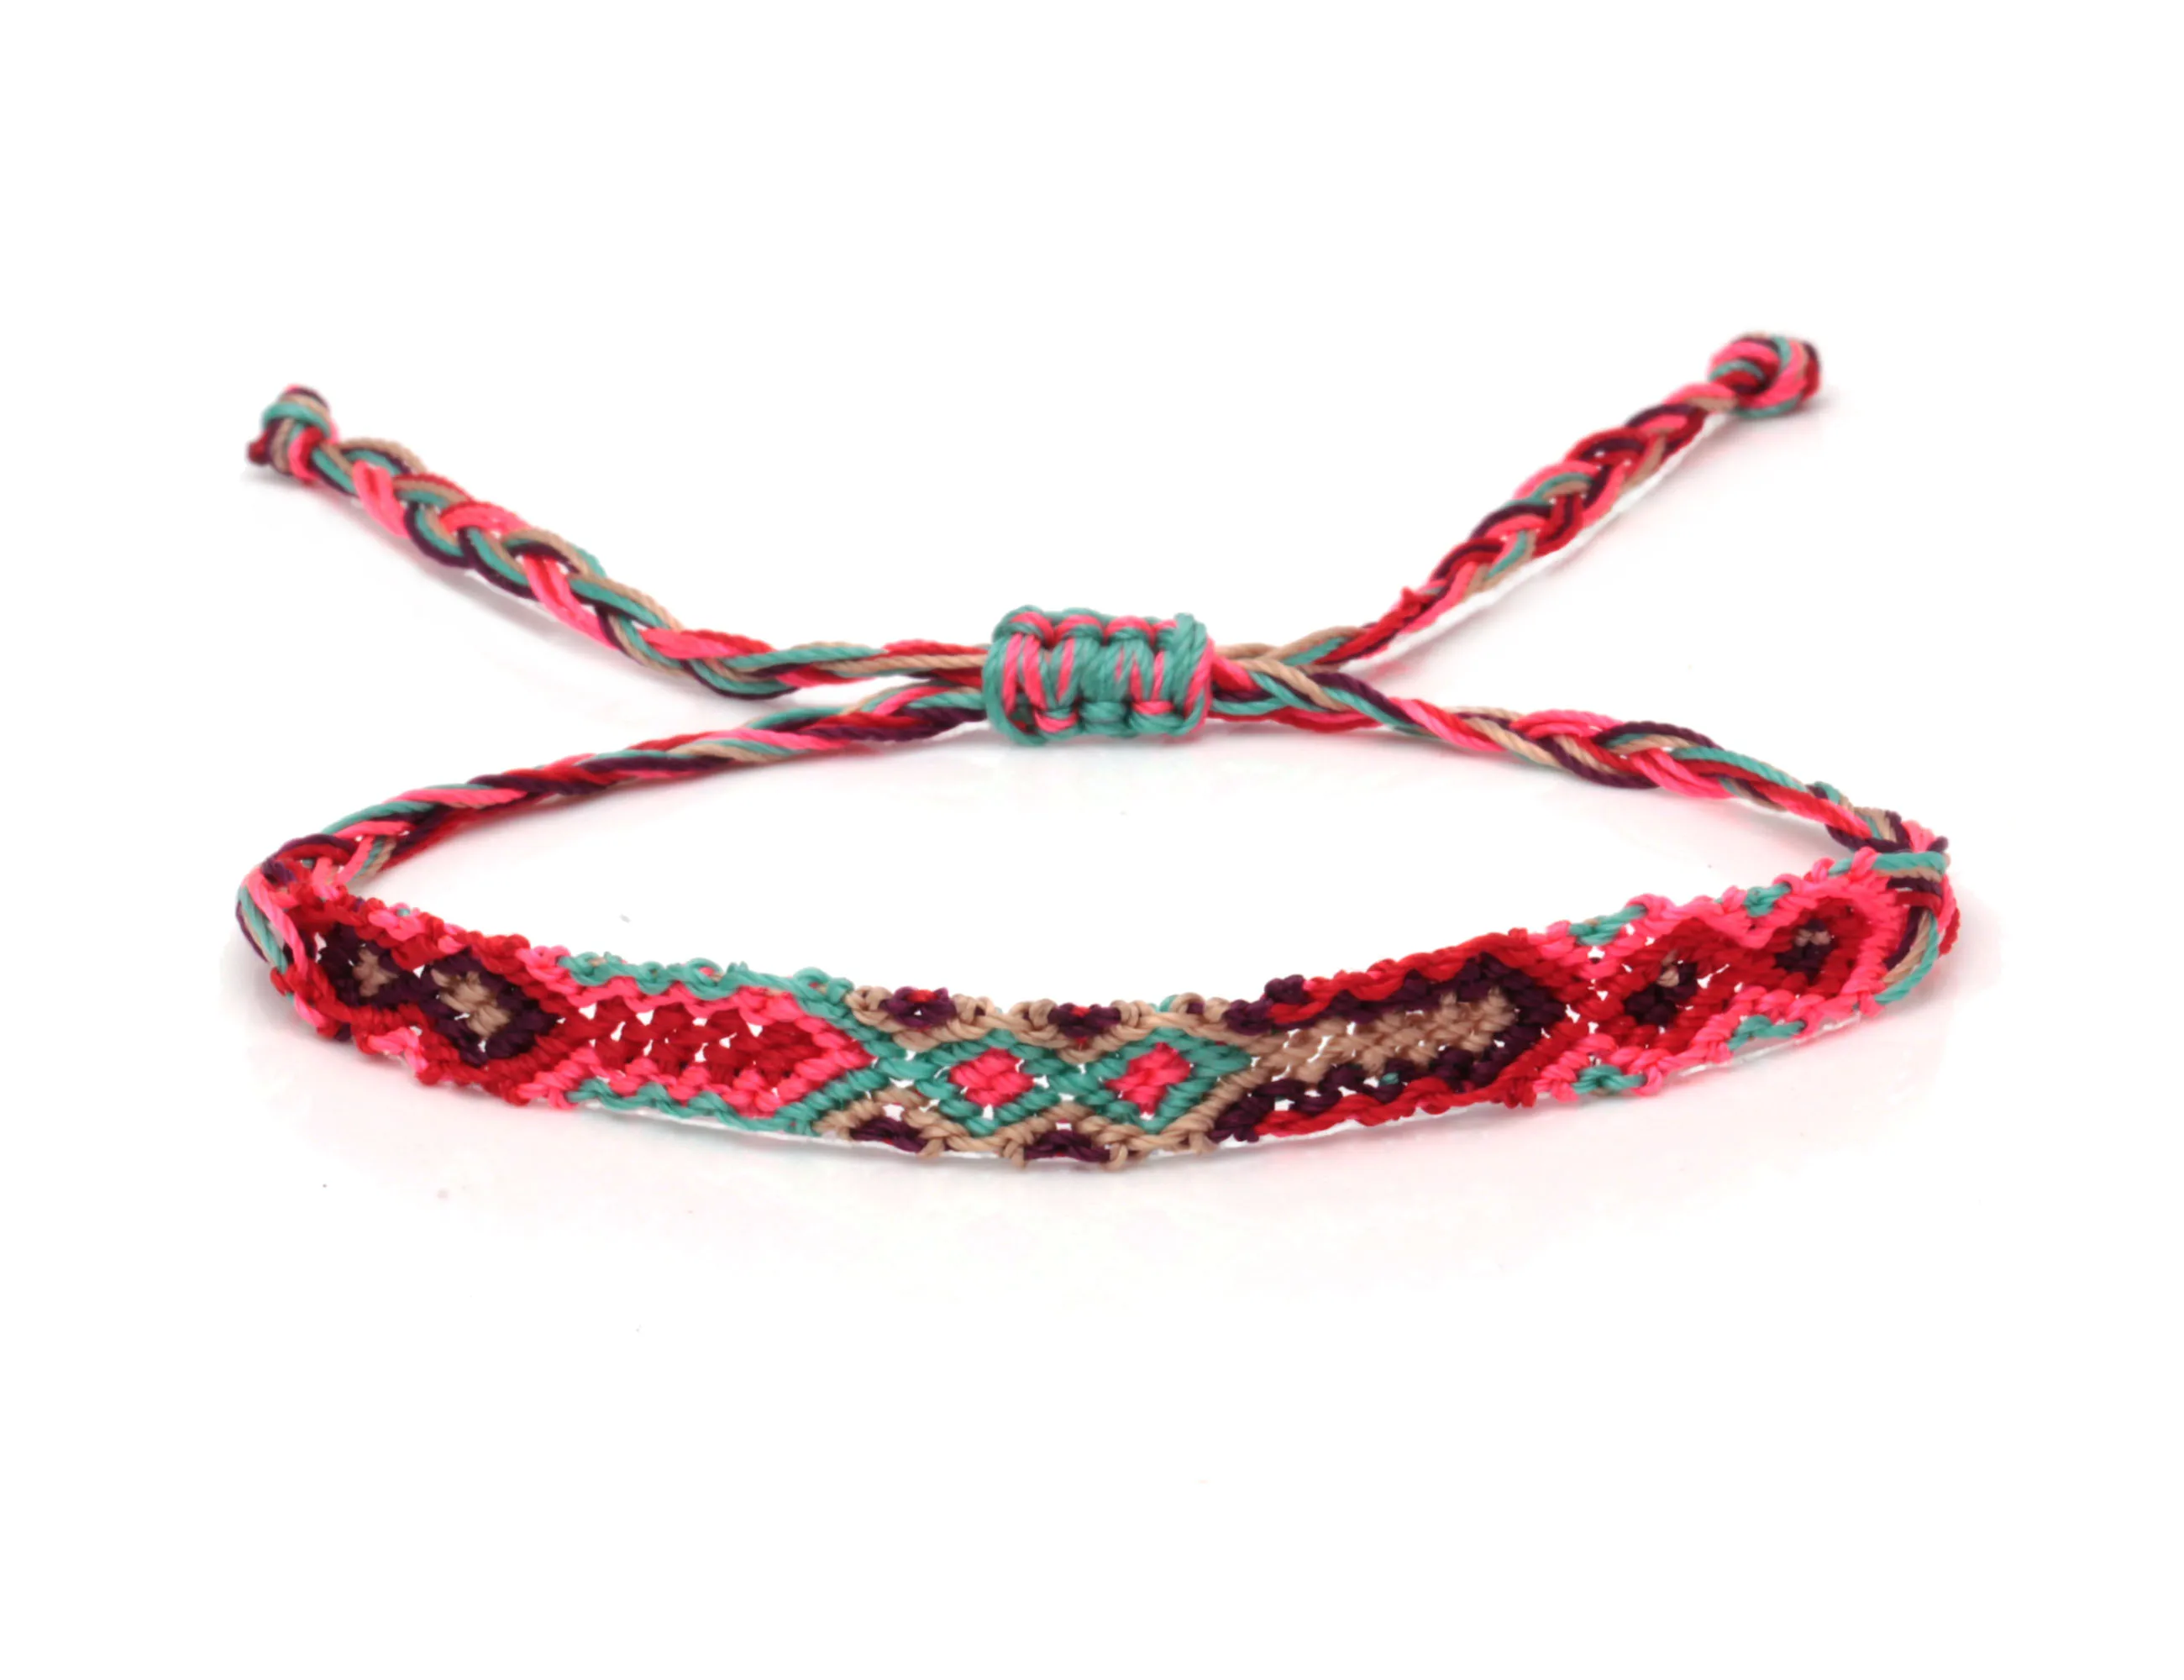 Boho радужный узор, цветные короткие тонкие браслеты Friendhip, 12 цветов, Океанский пляж, серфер, потрясающие браслеты, уникальный подарок